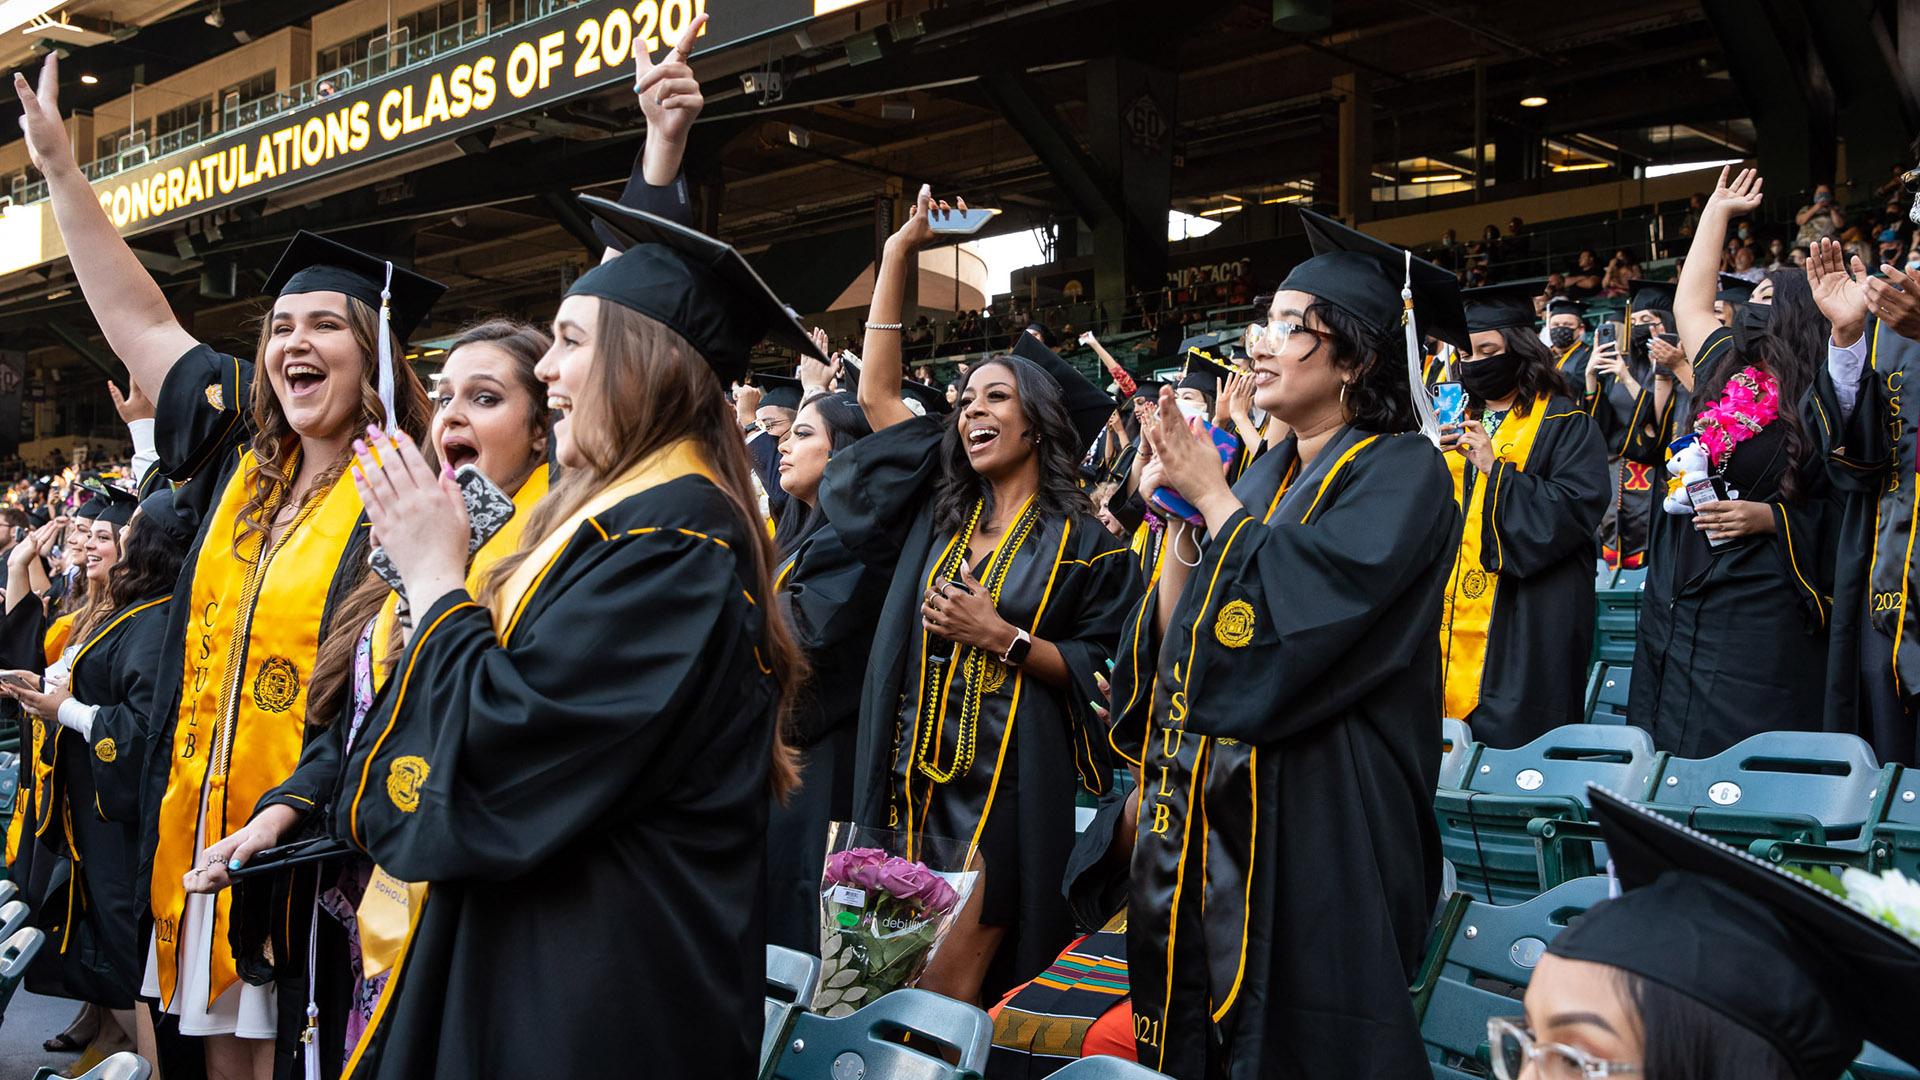 CSULB graduates celebrate Commencement at Anaheim Stadium